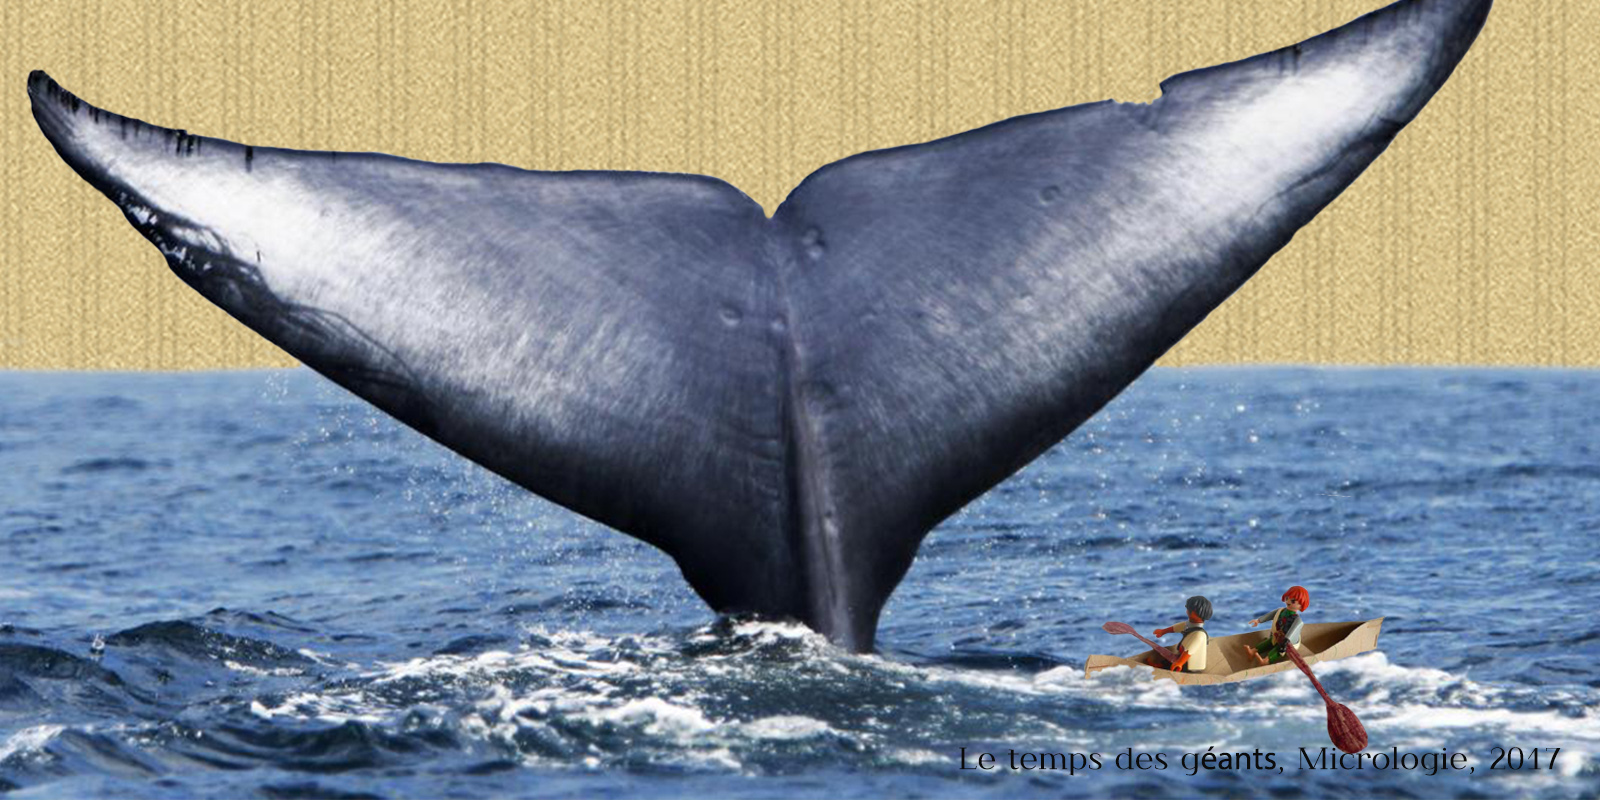 Baleines : le temps des géants, micrologie